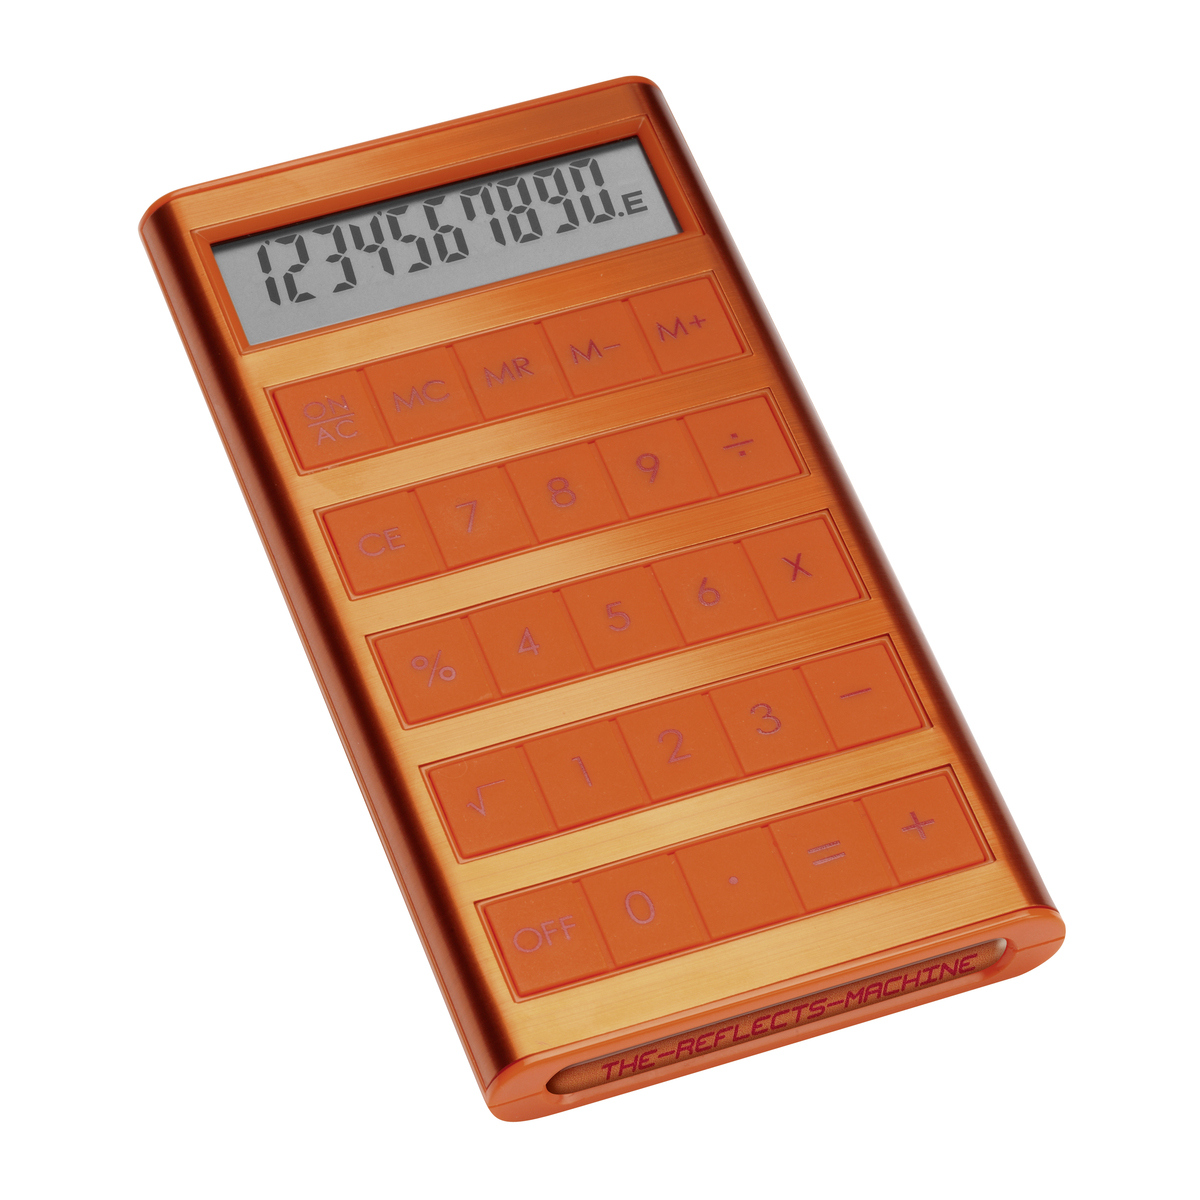 LM Solartaschenrechner REFLECTS-MACHINE ORANGE orange